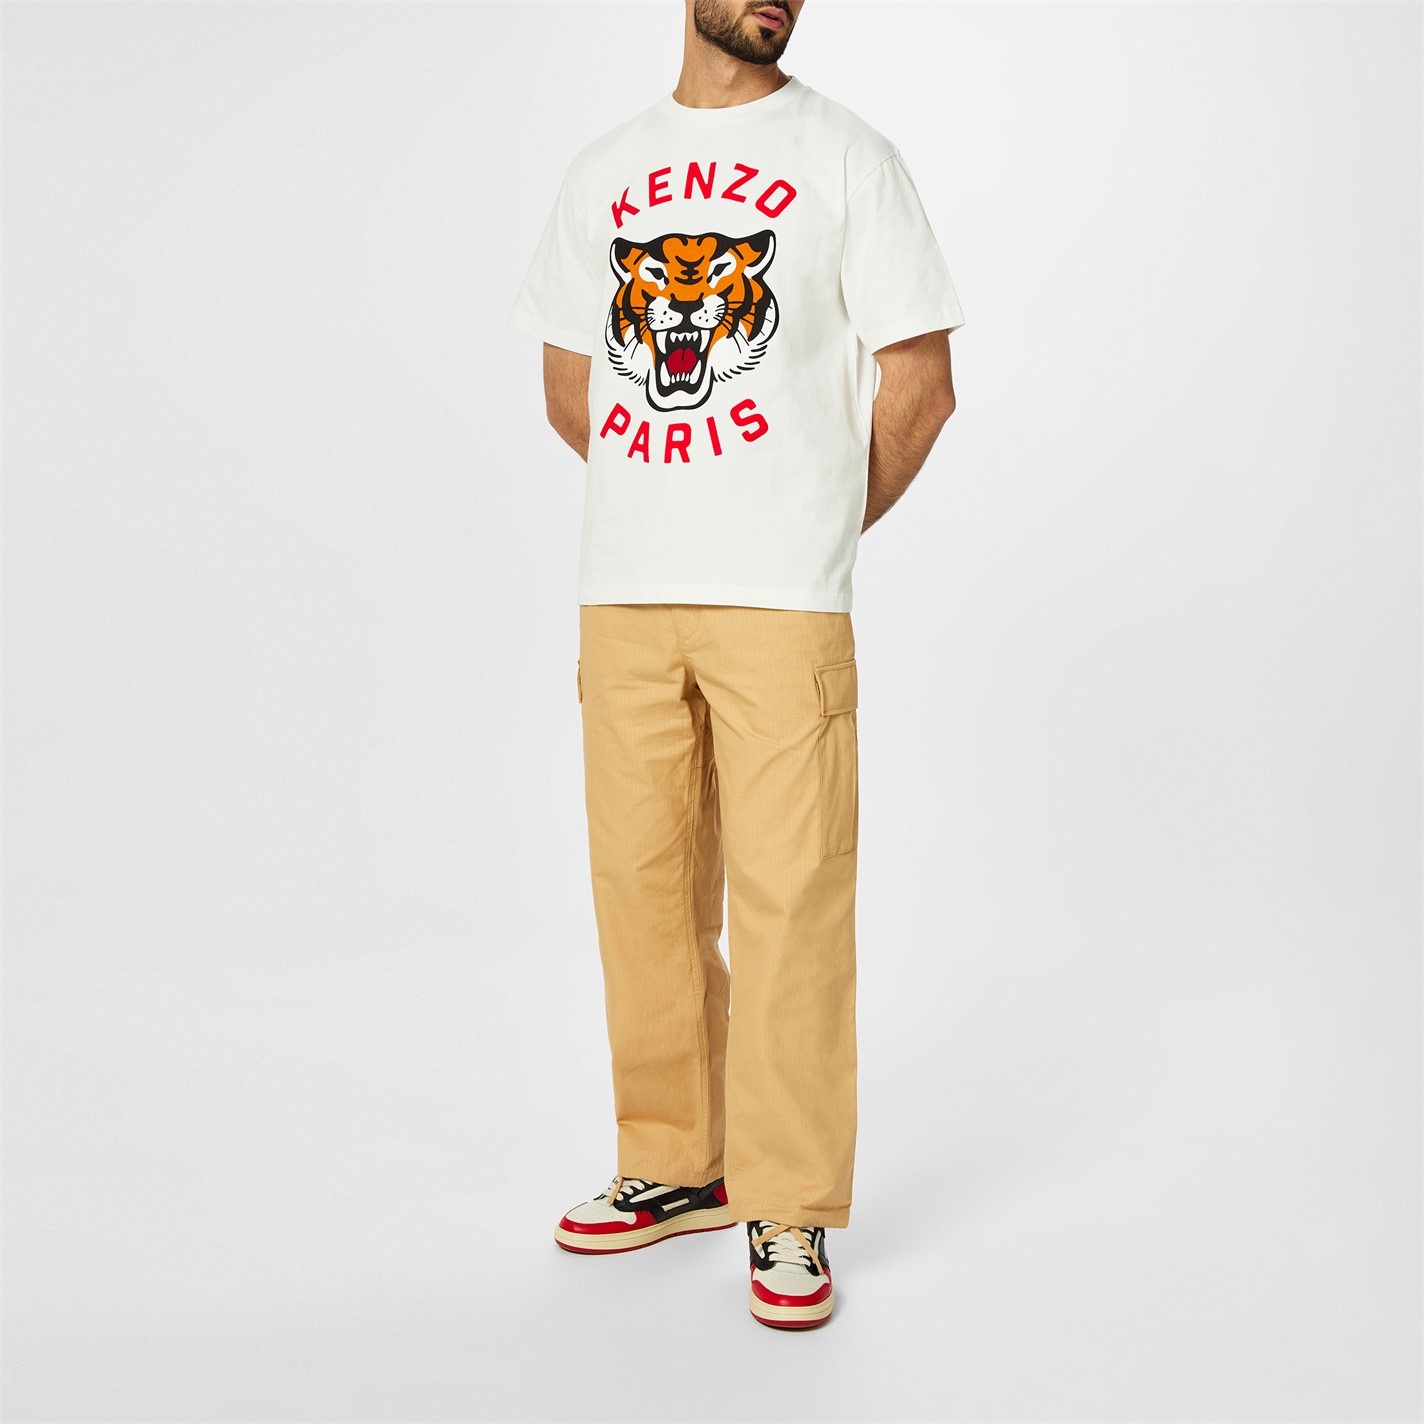 KNZO Tiger T-Shirt Sn42 - 2